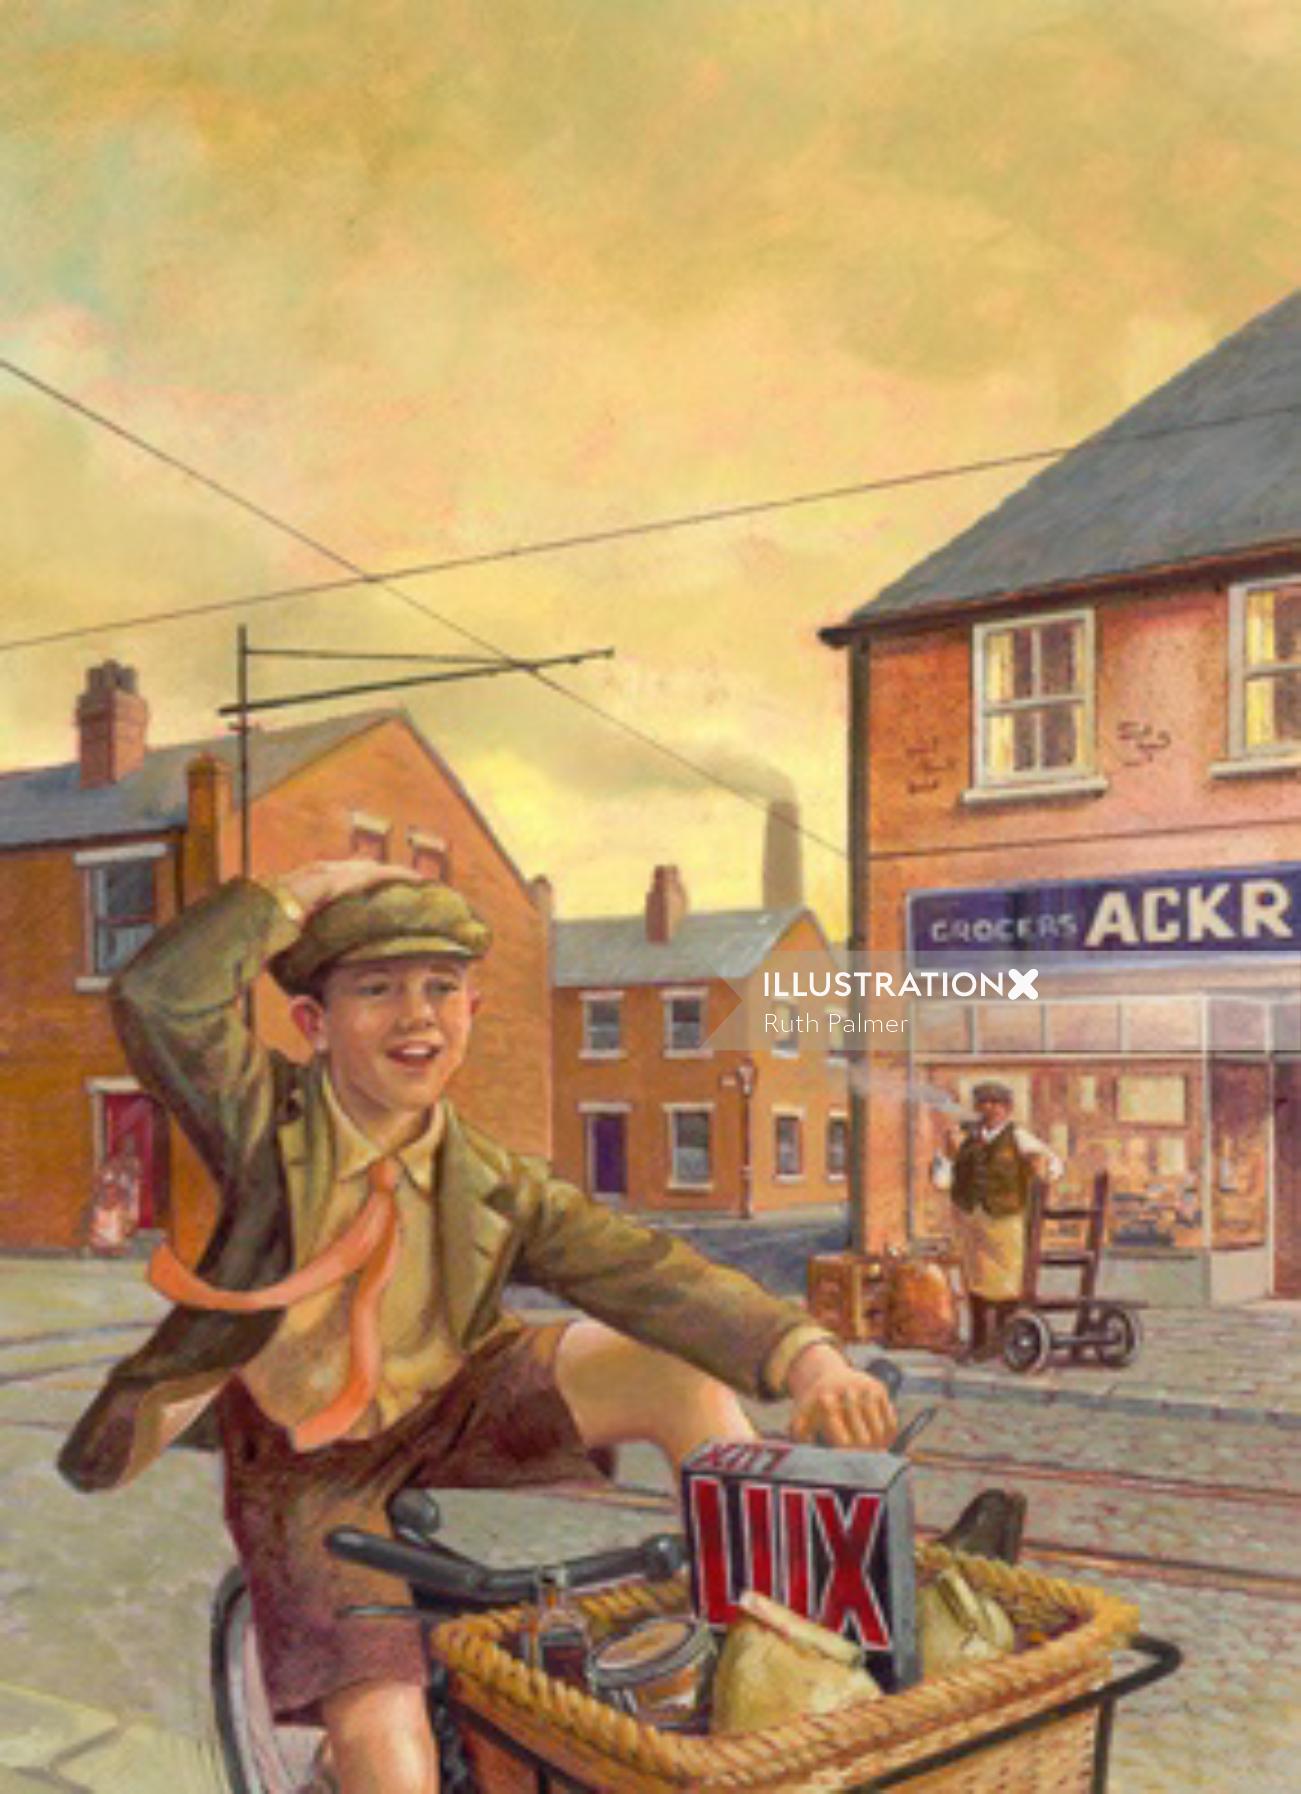 Capa de livro sobre a história de Leeds